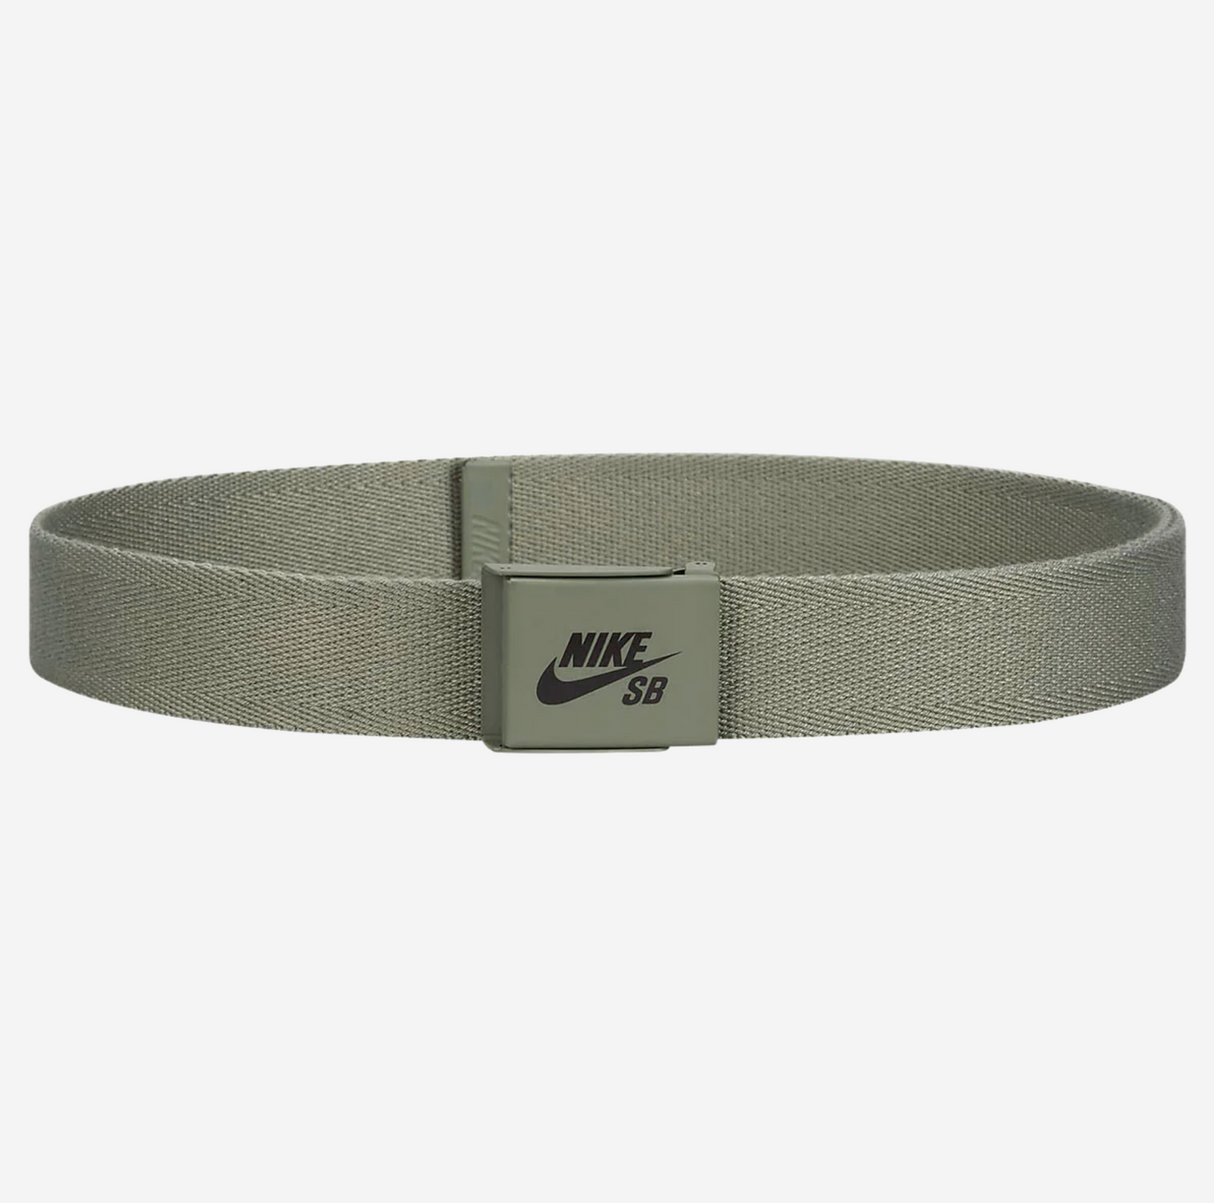 Nike SB Solid Olive Web Belt